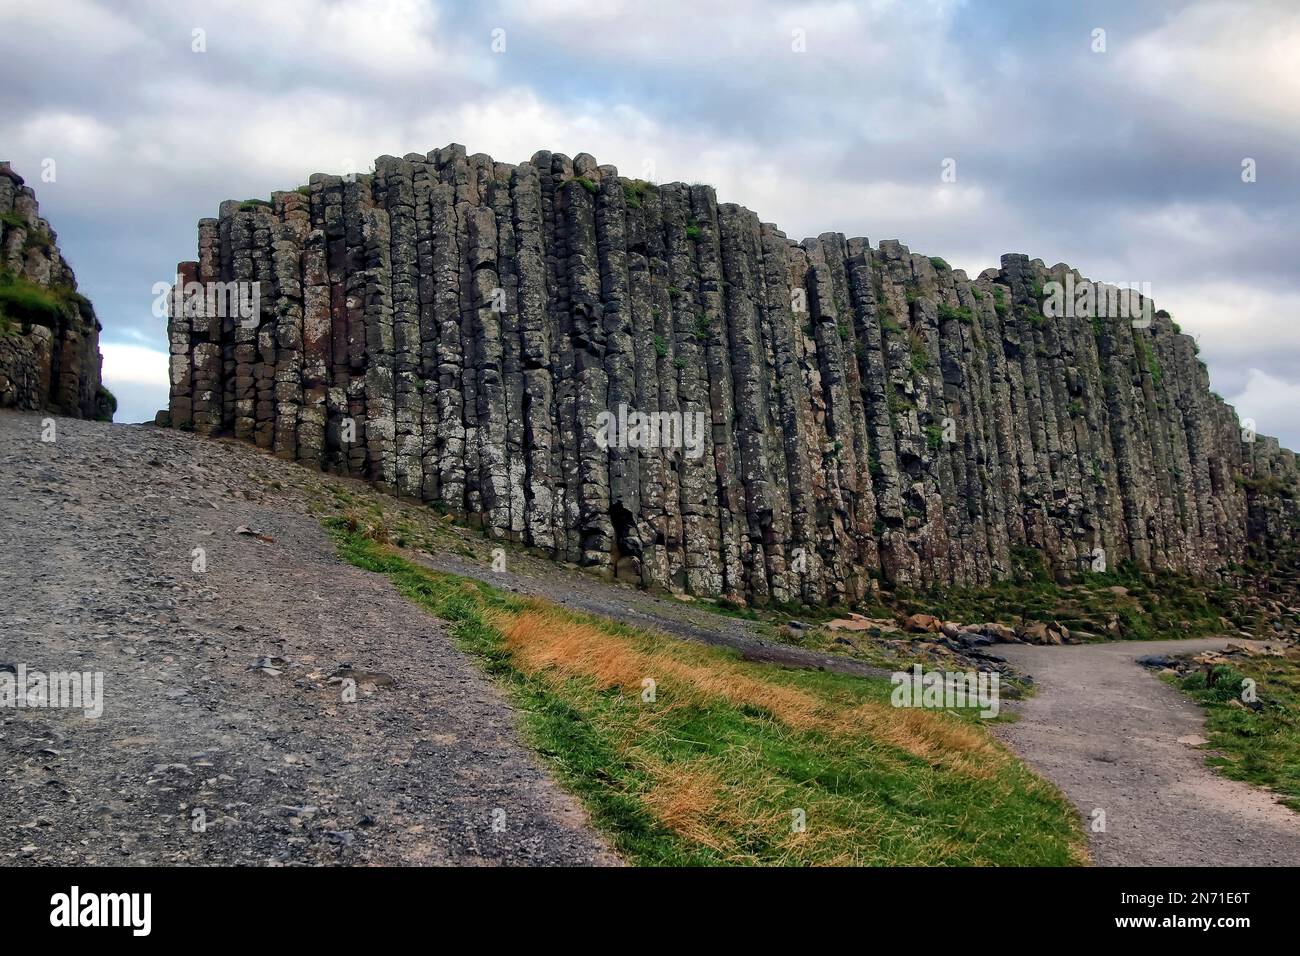 Le Giant's Causeway situé en Irlande du Nord (comté d'Antrim) est l'un des monuments les plus emblématiques d'Irlande et classé au patrimoine mondial de l'UNESCO Banque D'Images